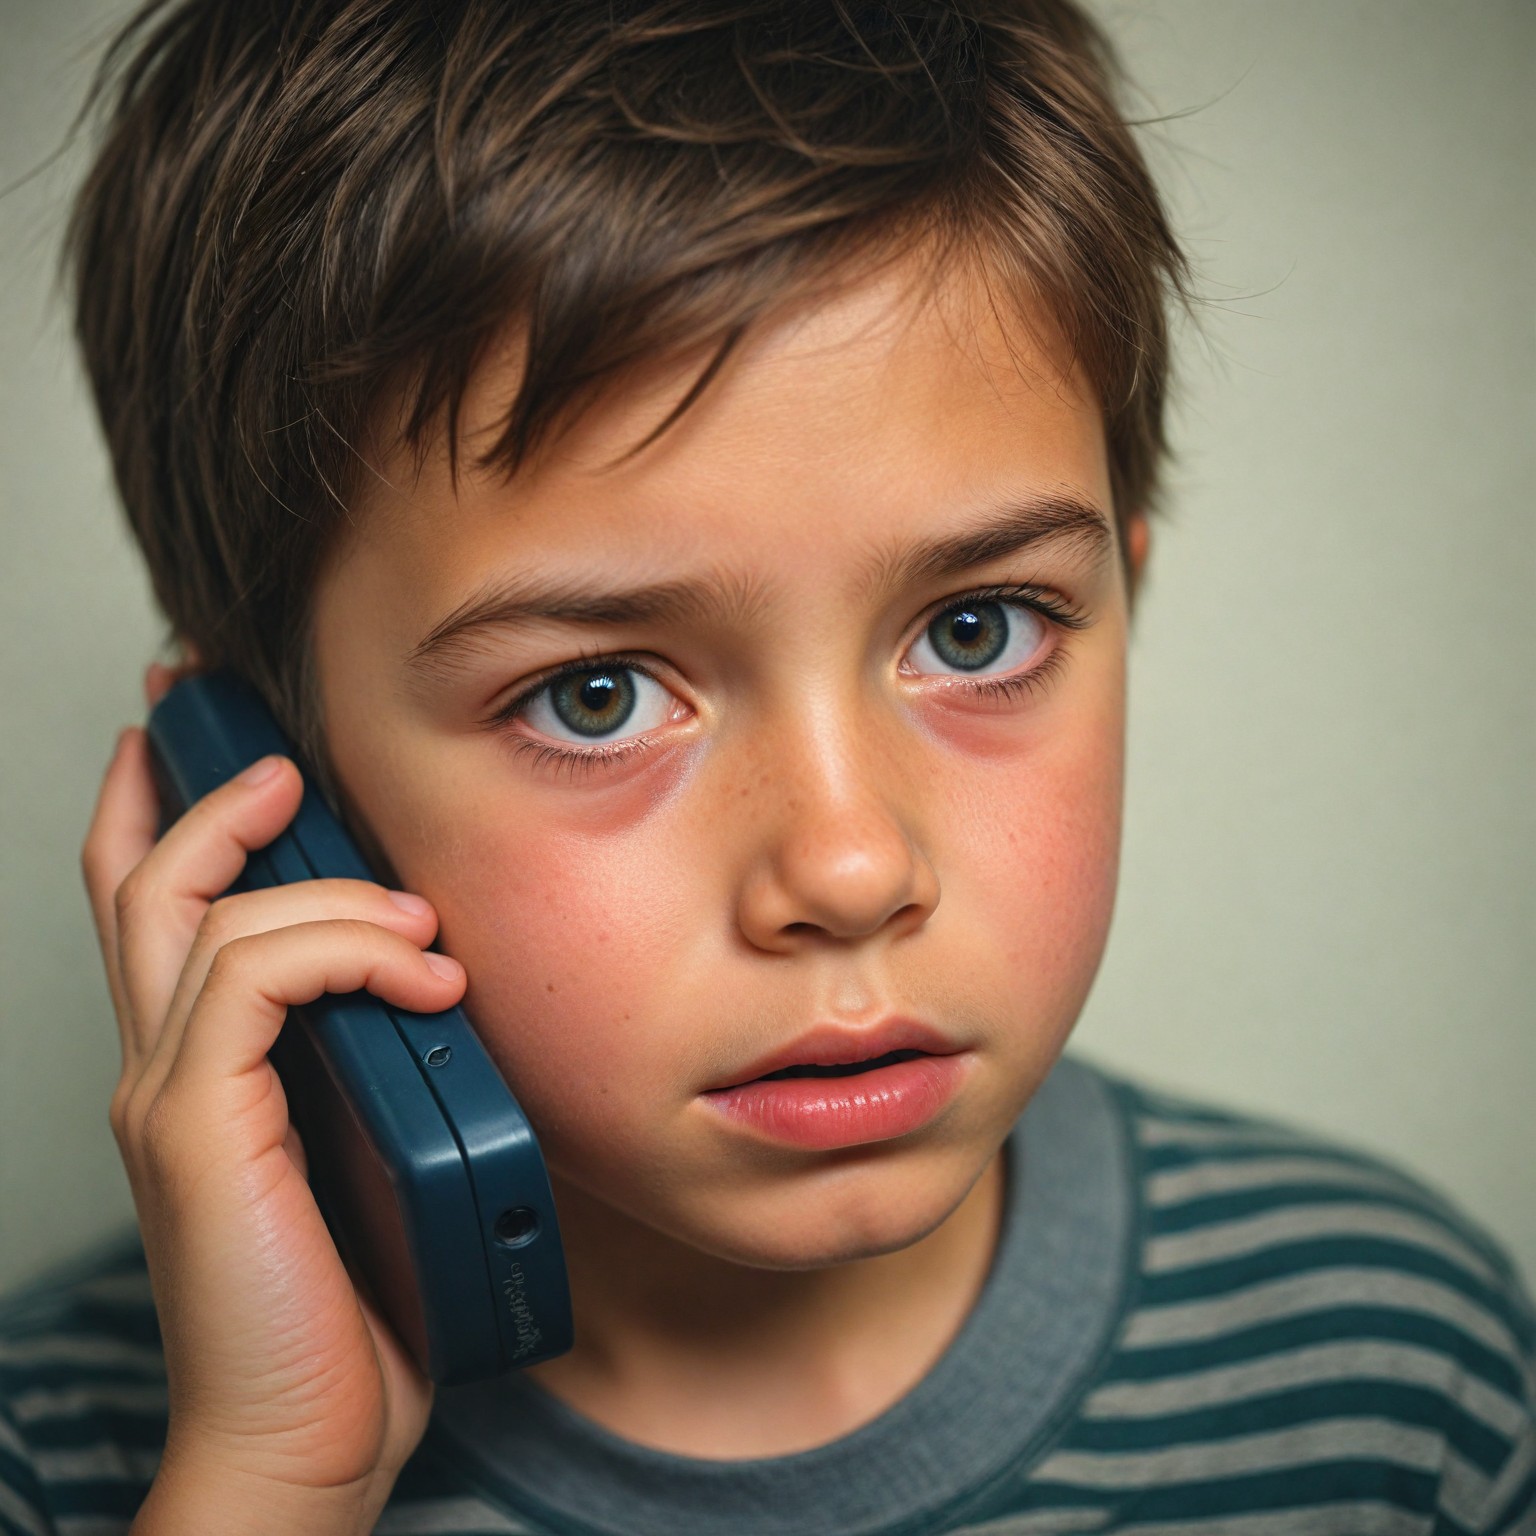 Arthur haciendo una llamada desesperada a su padre | Fuente: Midjourney